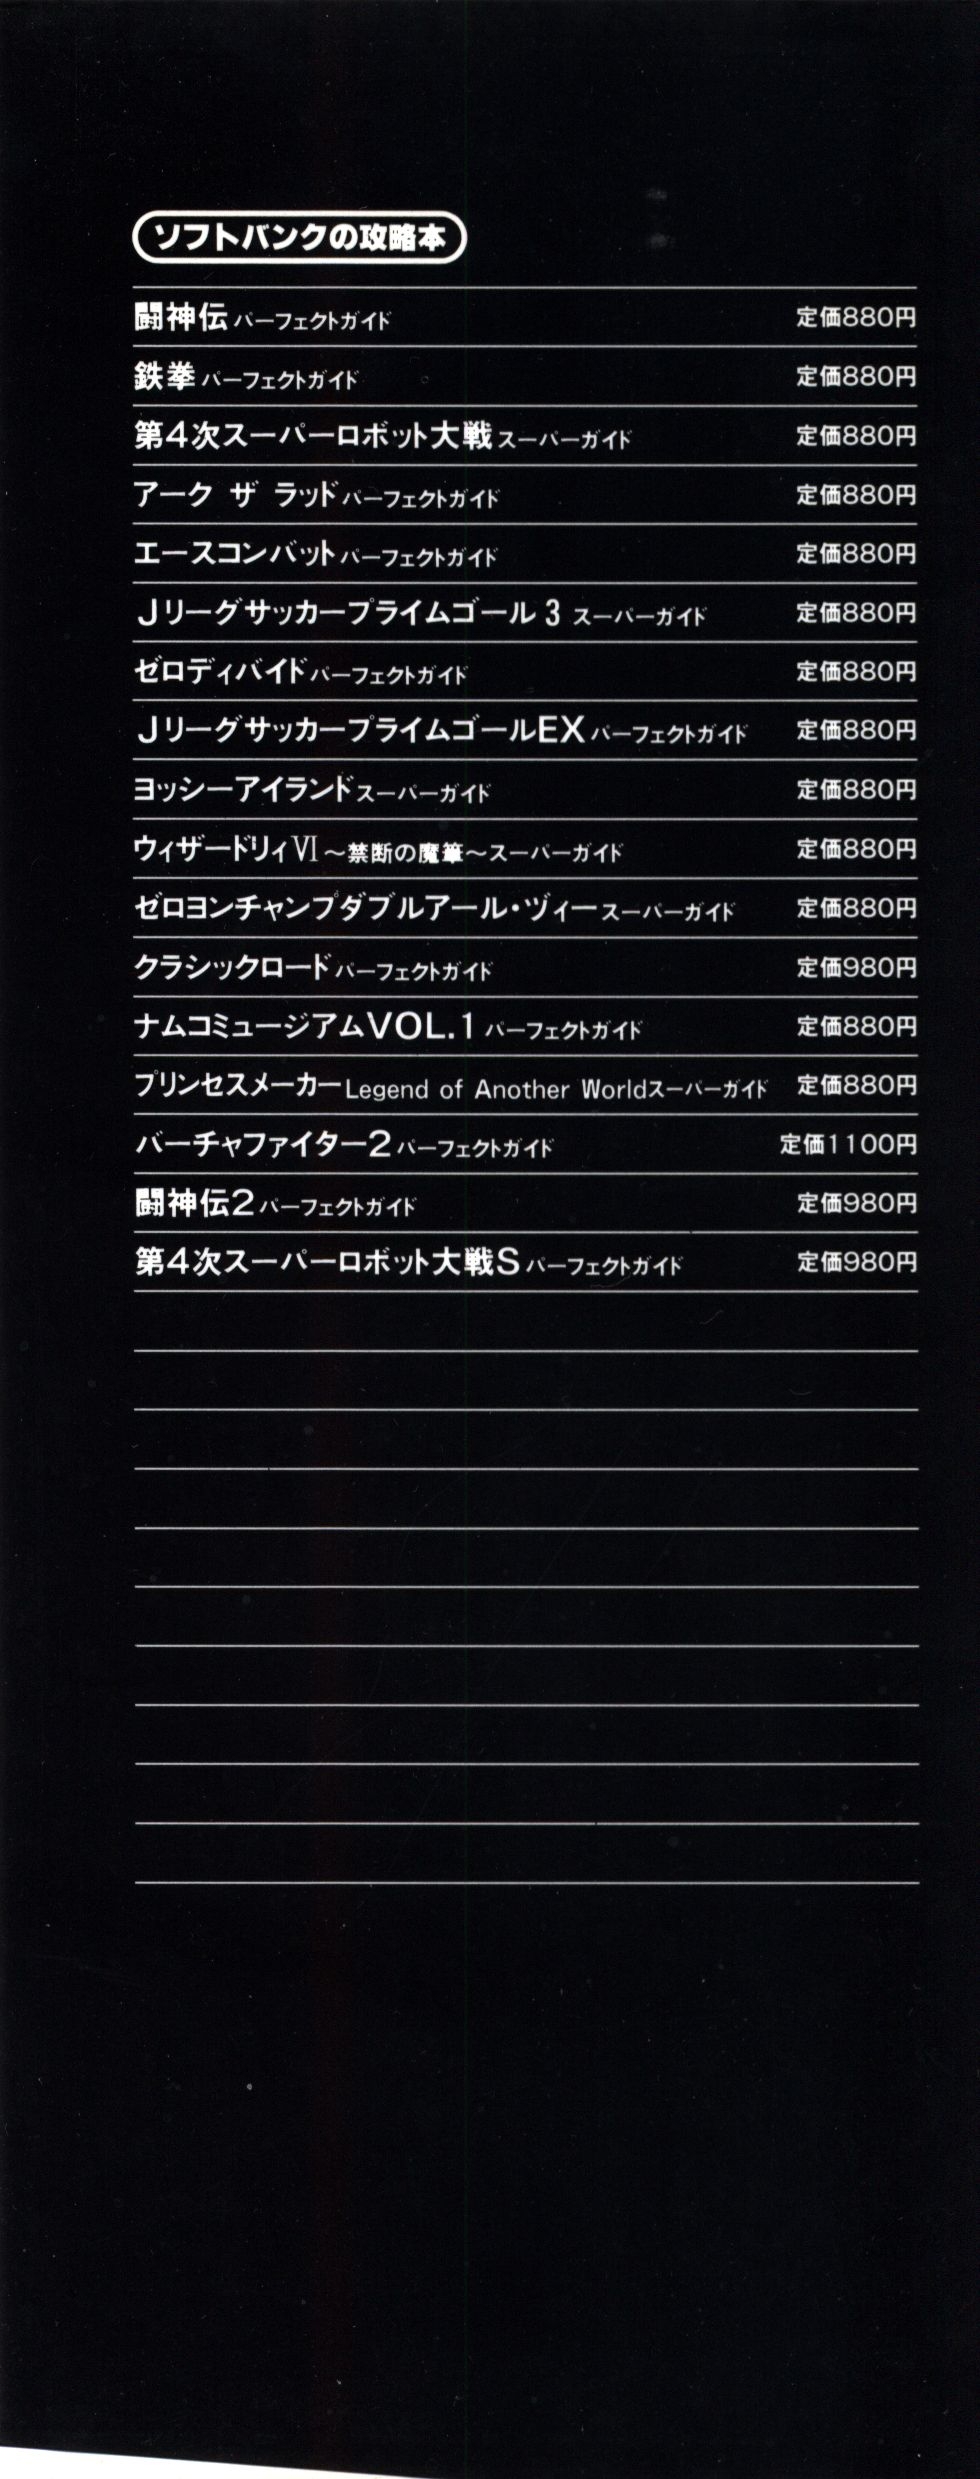 Guardian Heroes Perfect Guide (Sega Saturn magazine books) 131